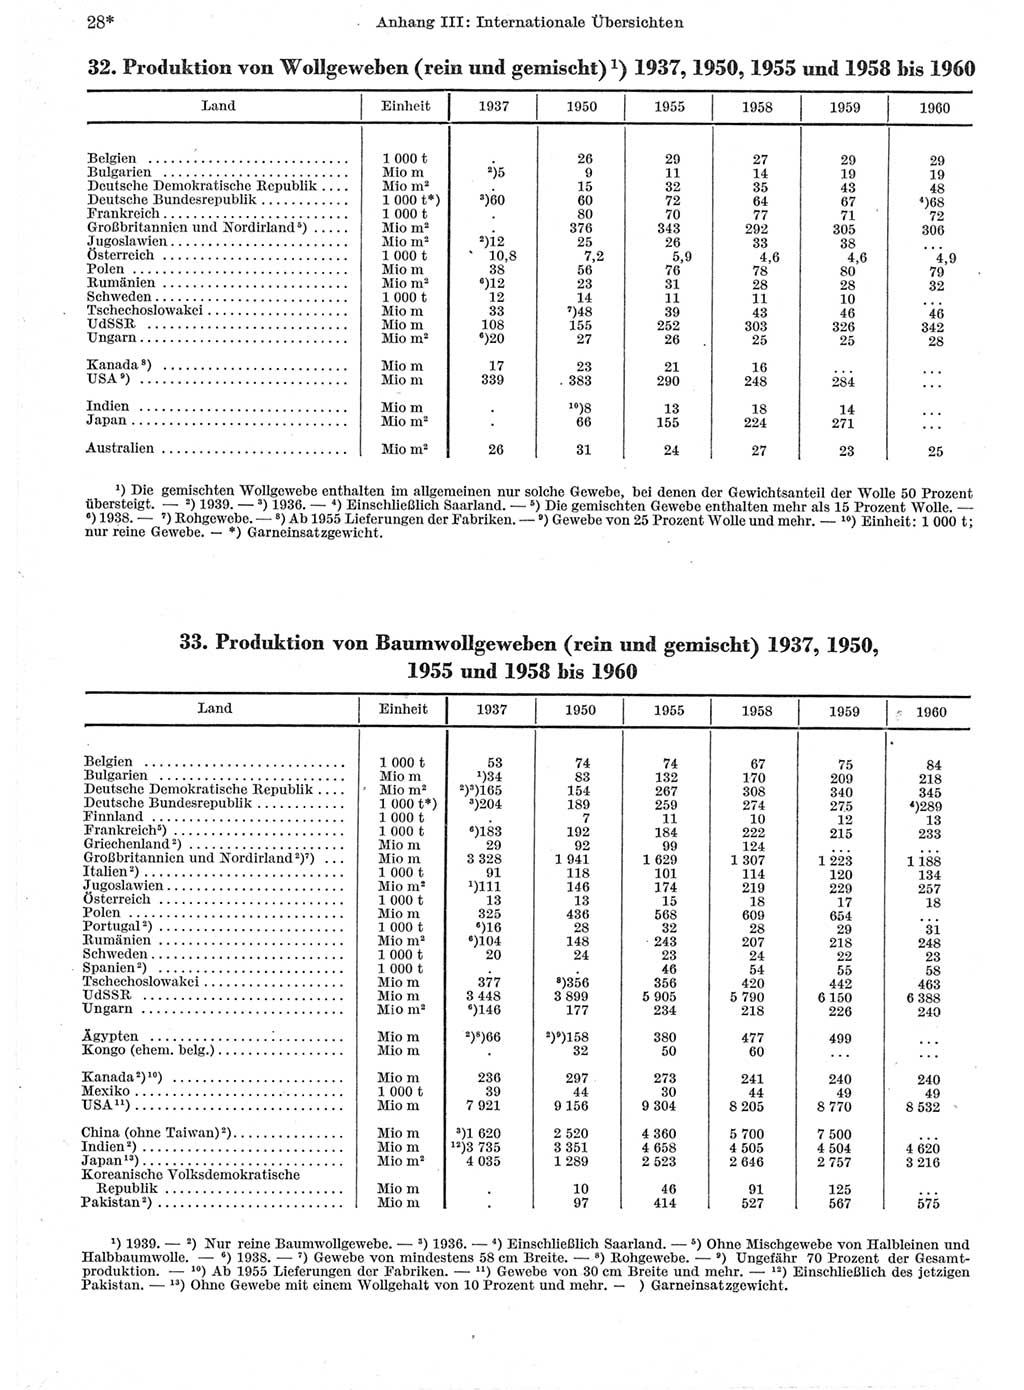 Statistisches Jahrbuch der Deutschen Demokratischen Republik (DDR) 1962, Seite 28 (Stat. Jb. DDR 1962, S. 28)